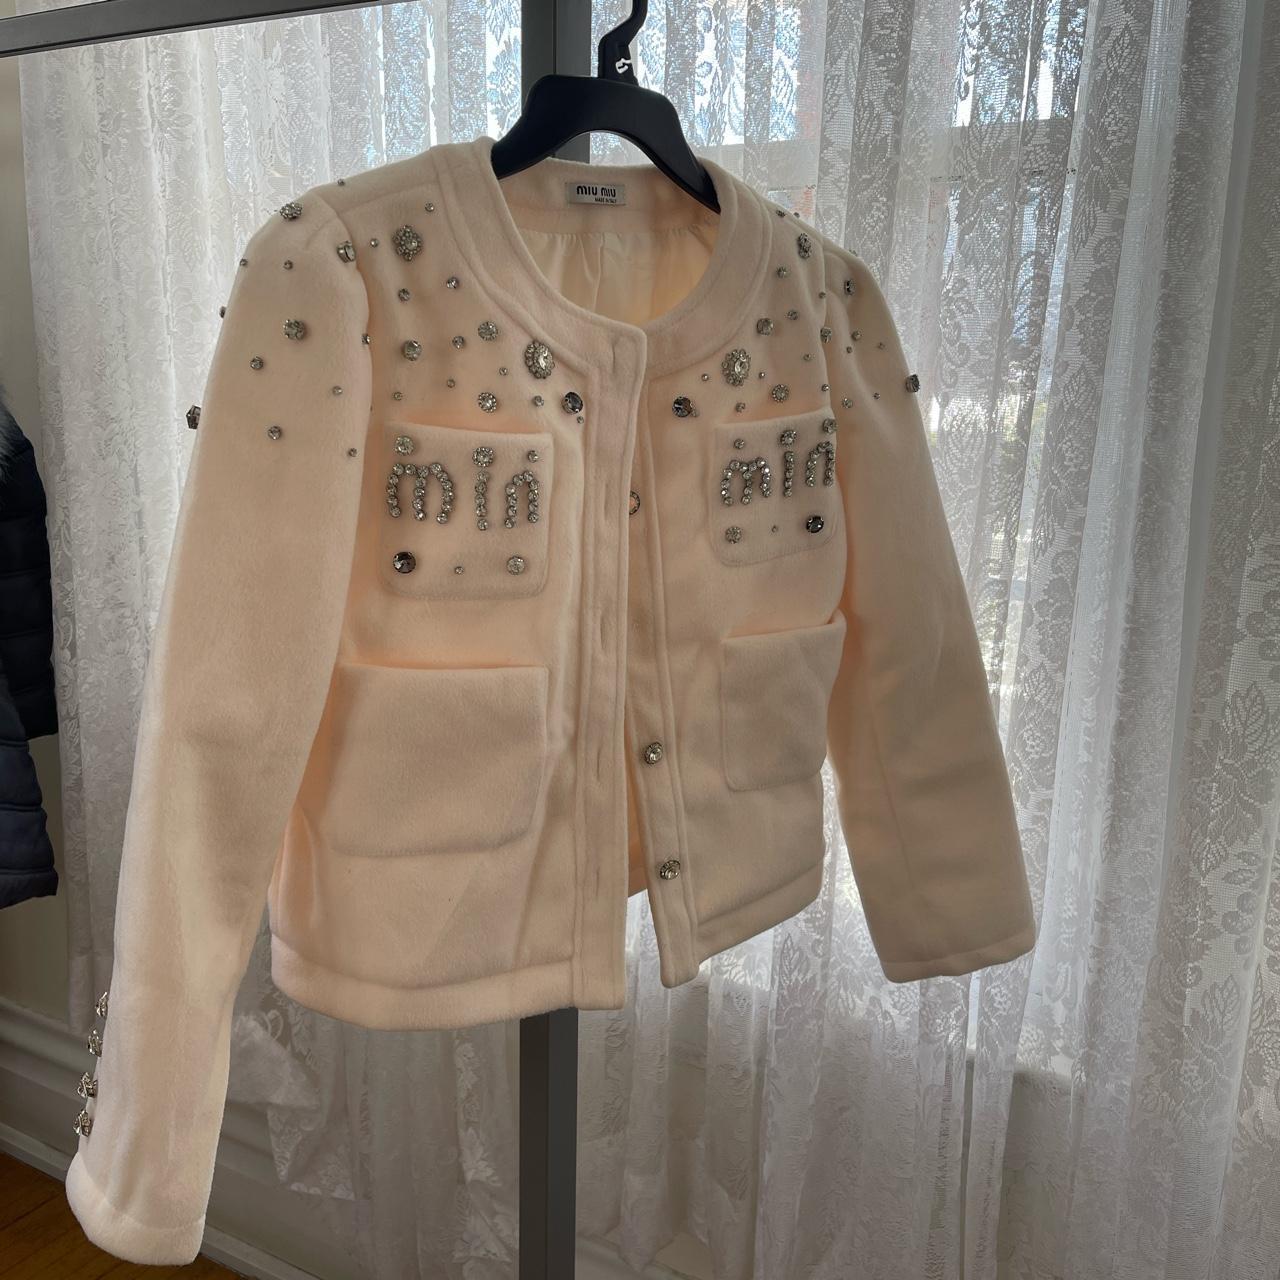 Miu Miu coat Lost a clothes button 100% Authentic - Depop